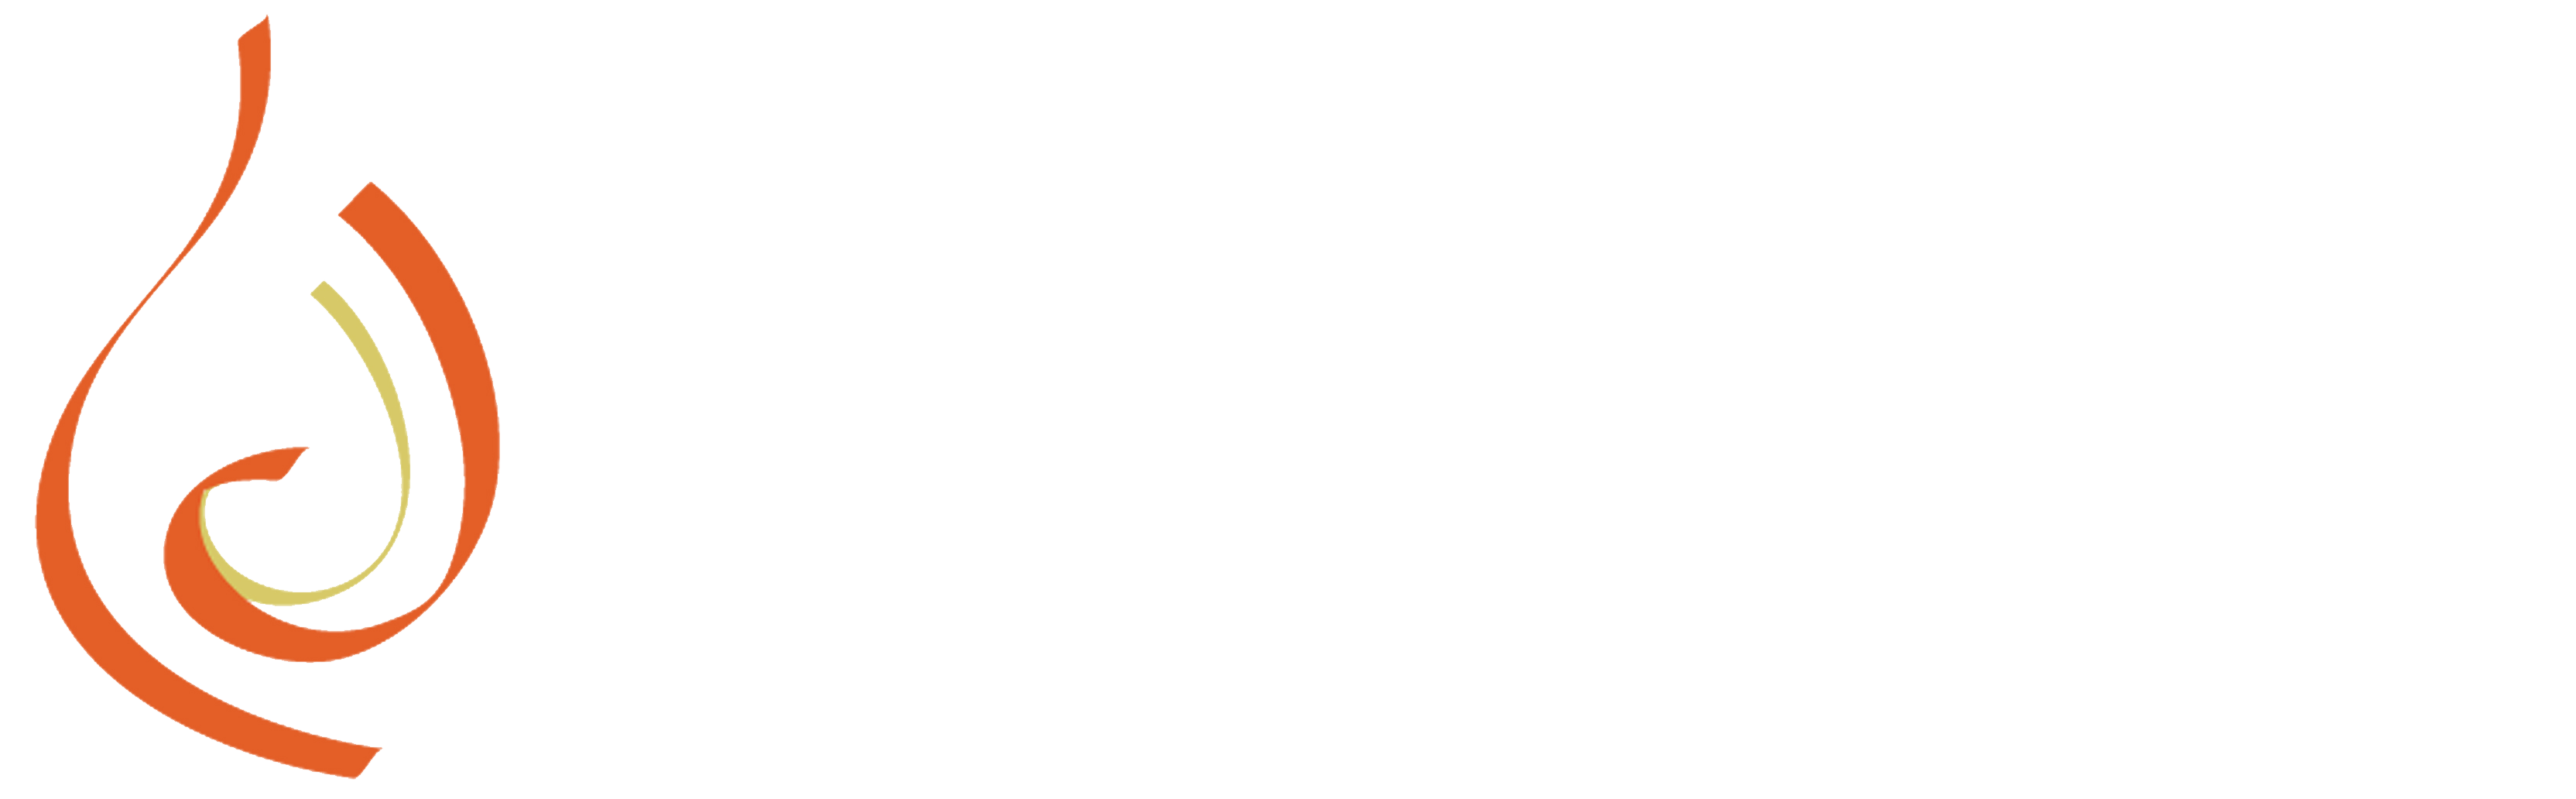 Cornerstone Vineyard